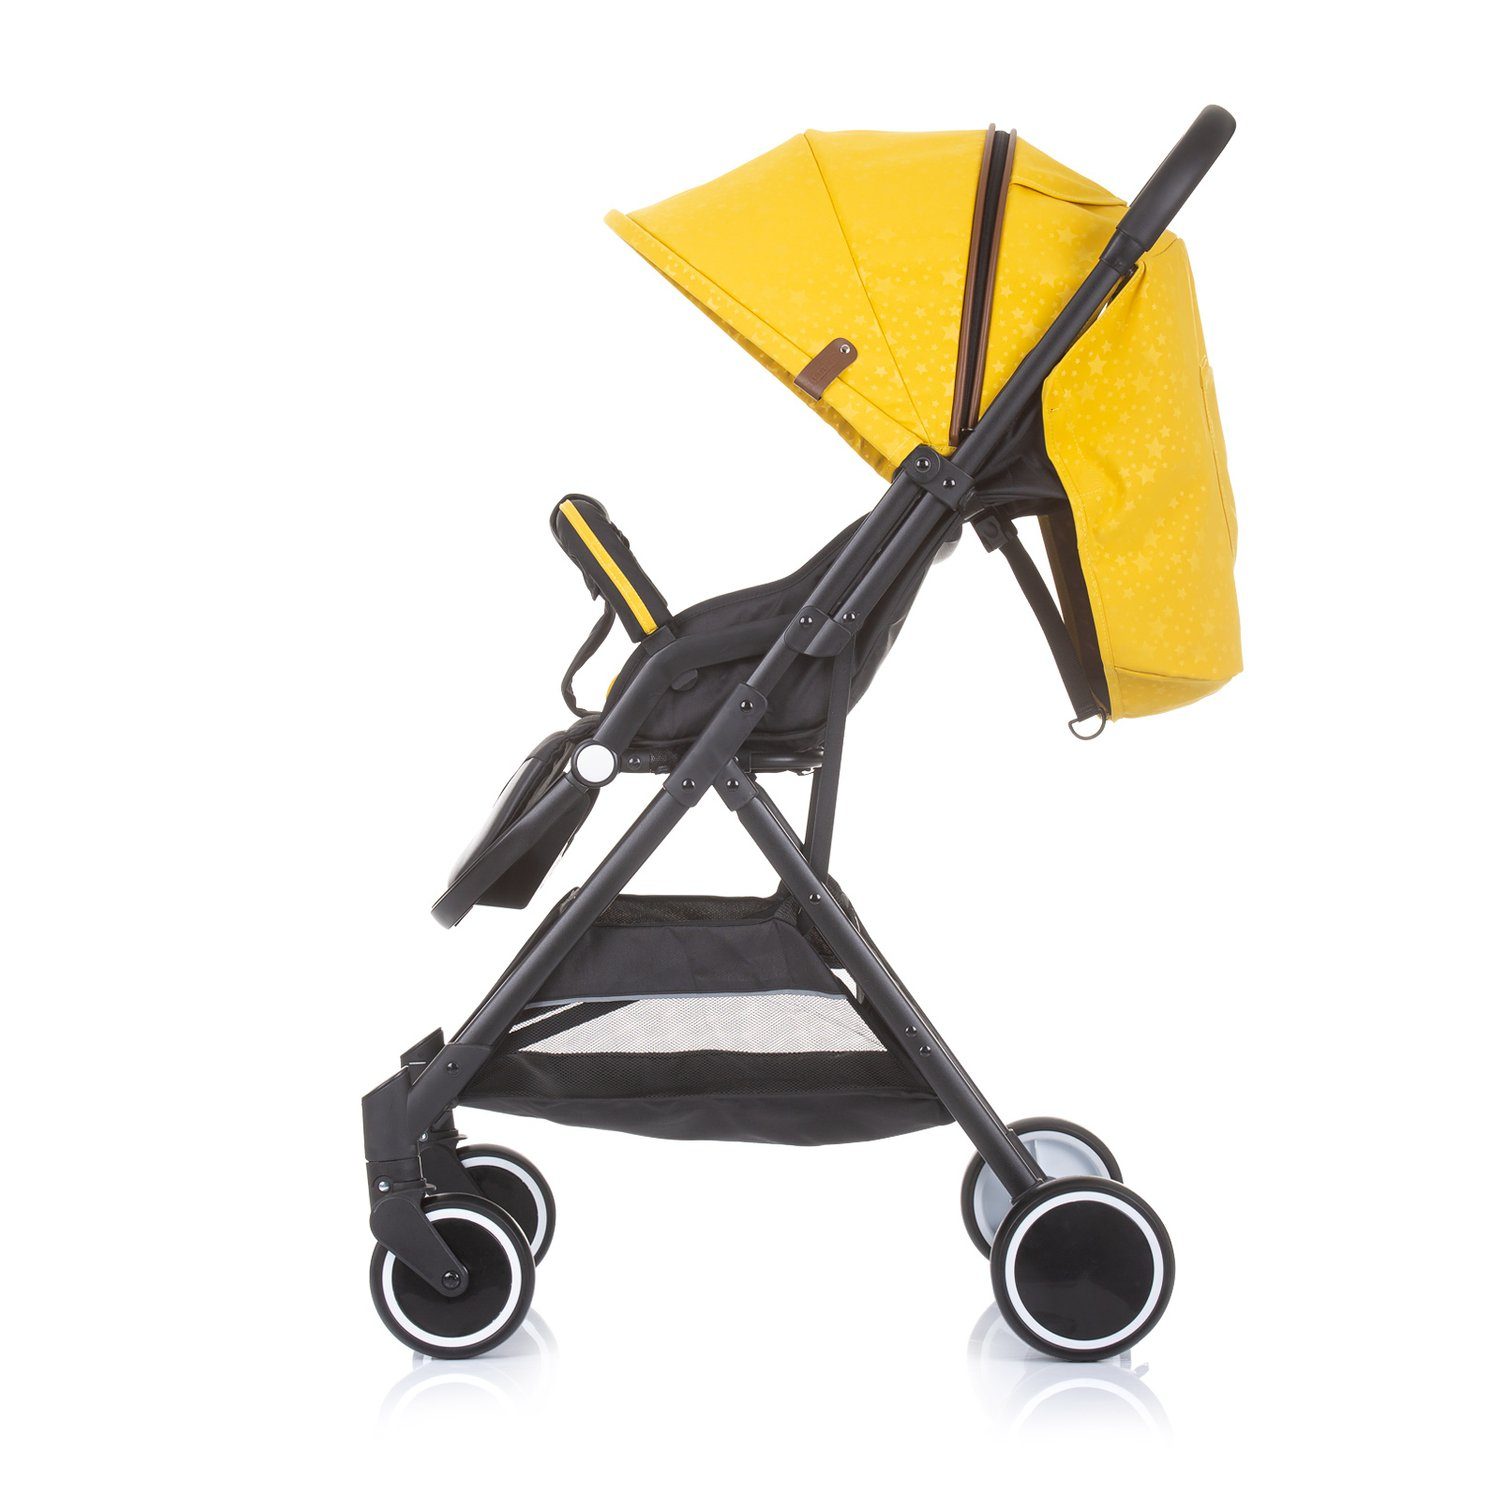 Graffiti Chipolino Kinder-Buggy Rückenlehne Sonnendach Kinderwagen klappbar gelb verstellbar Clarice, Buggy